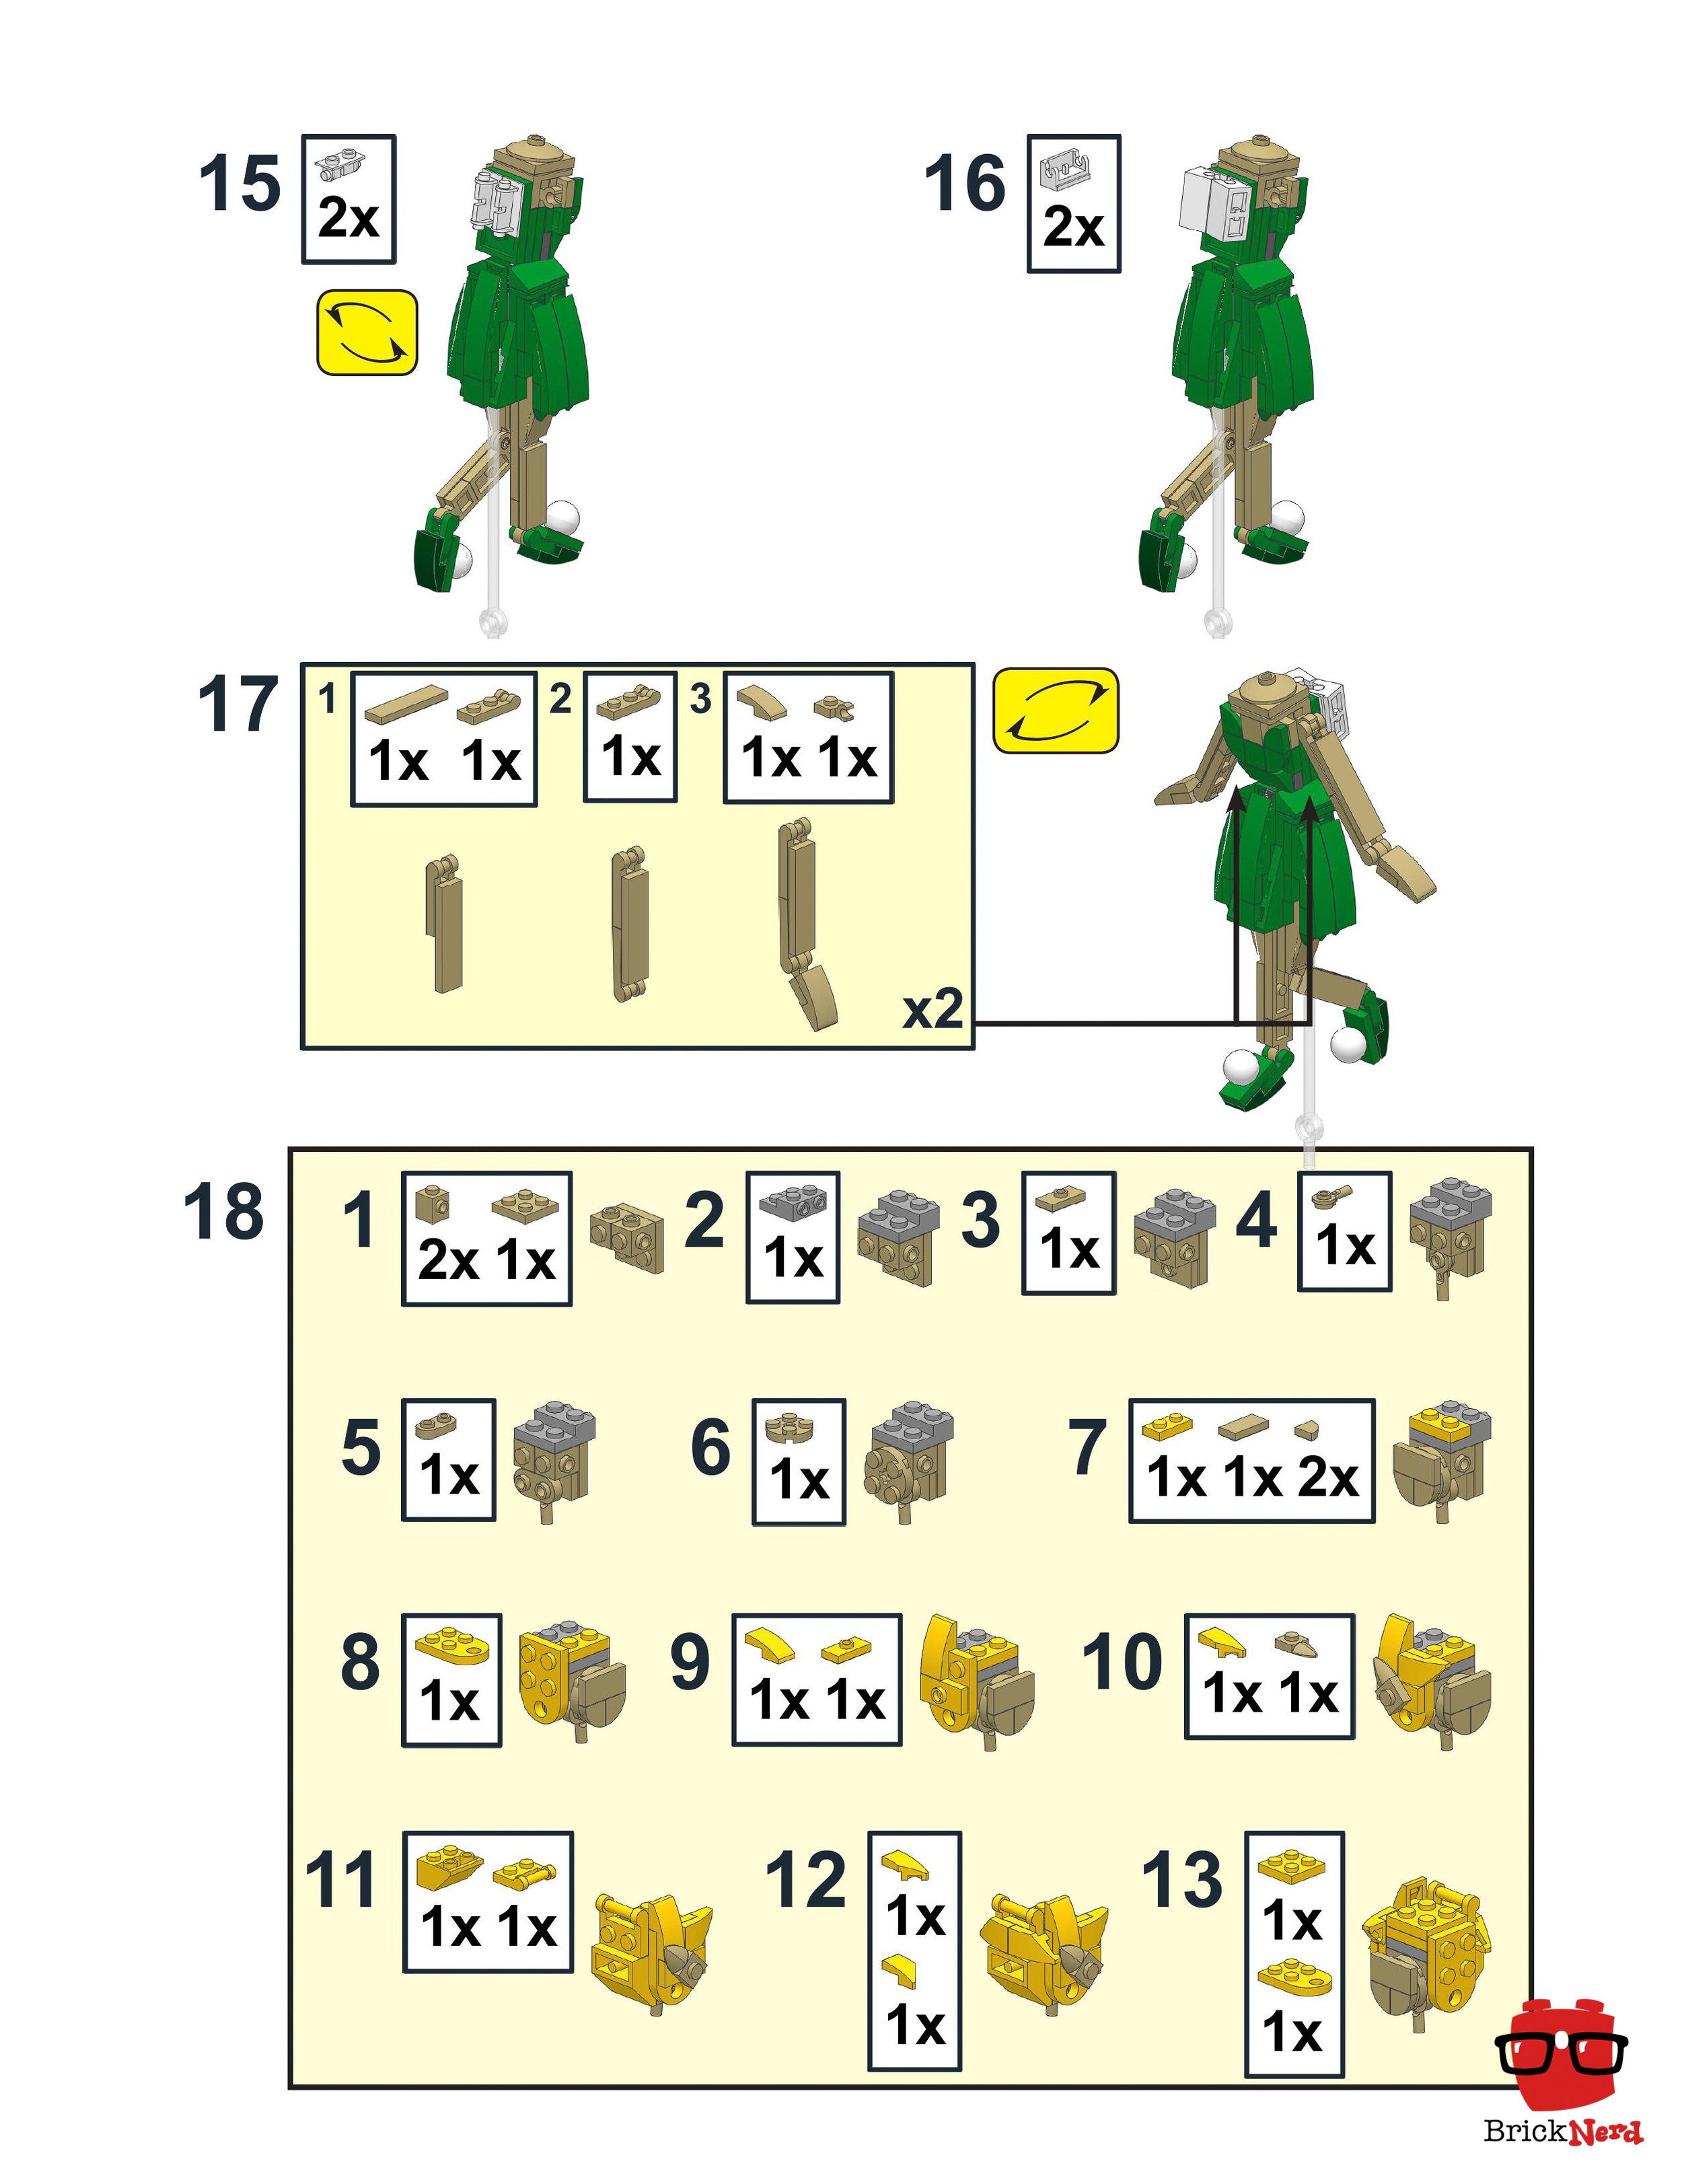 LEGO Tinkerbell Instructions 4 - BrickNerd.jpg